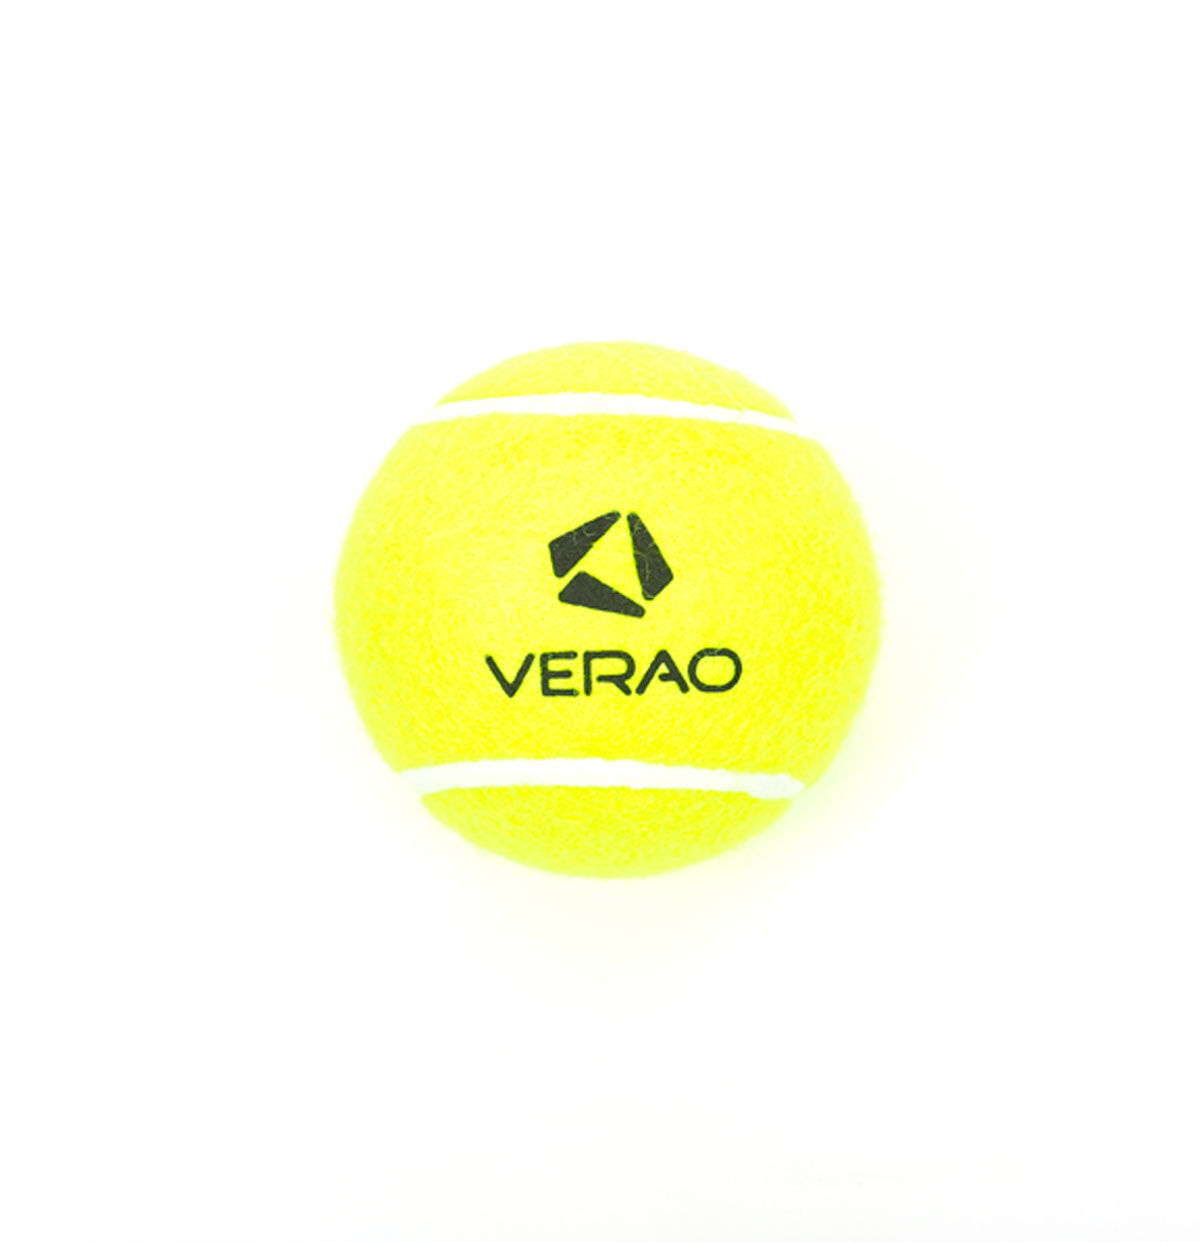 puma tennis ball